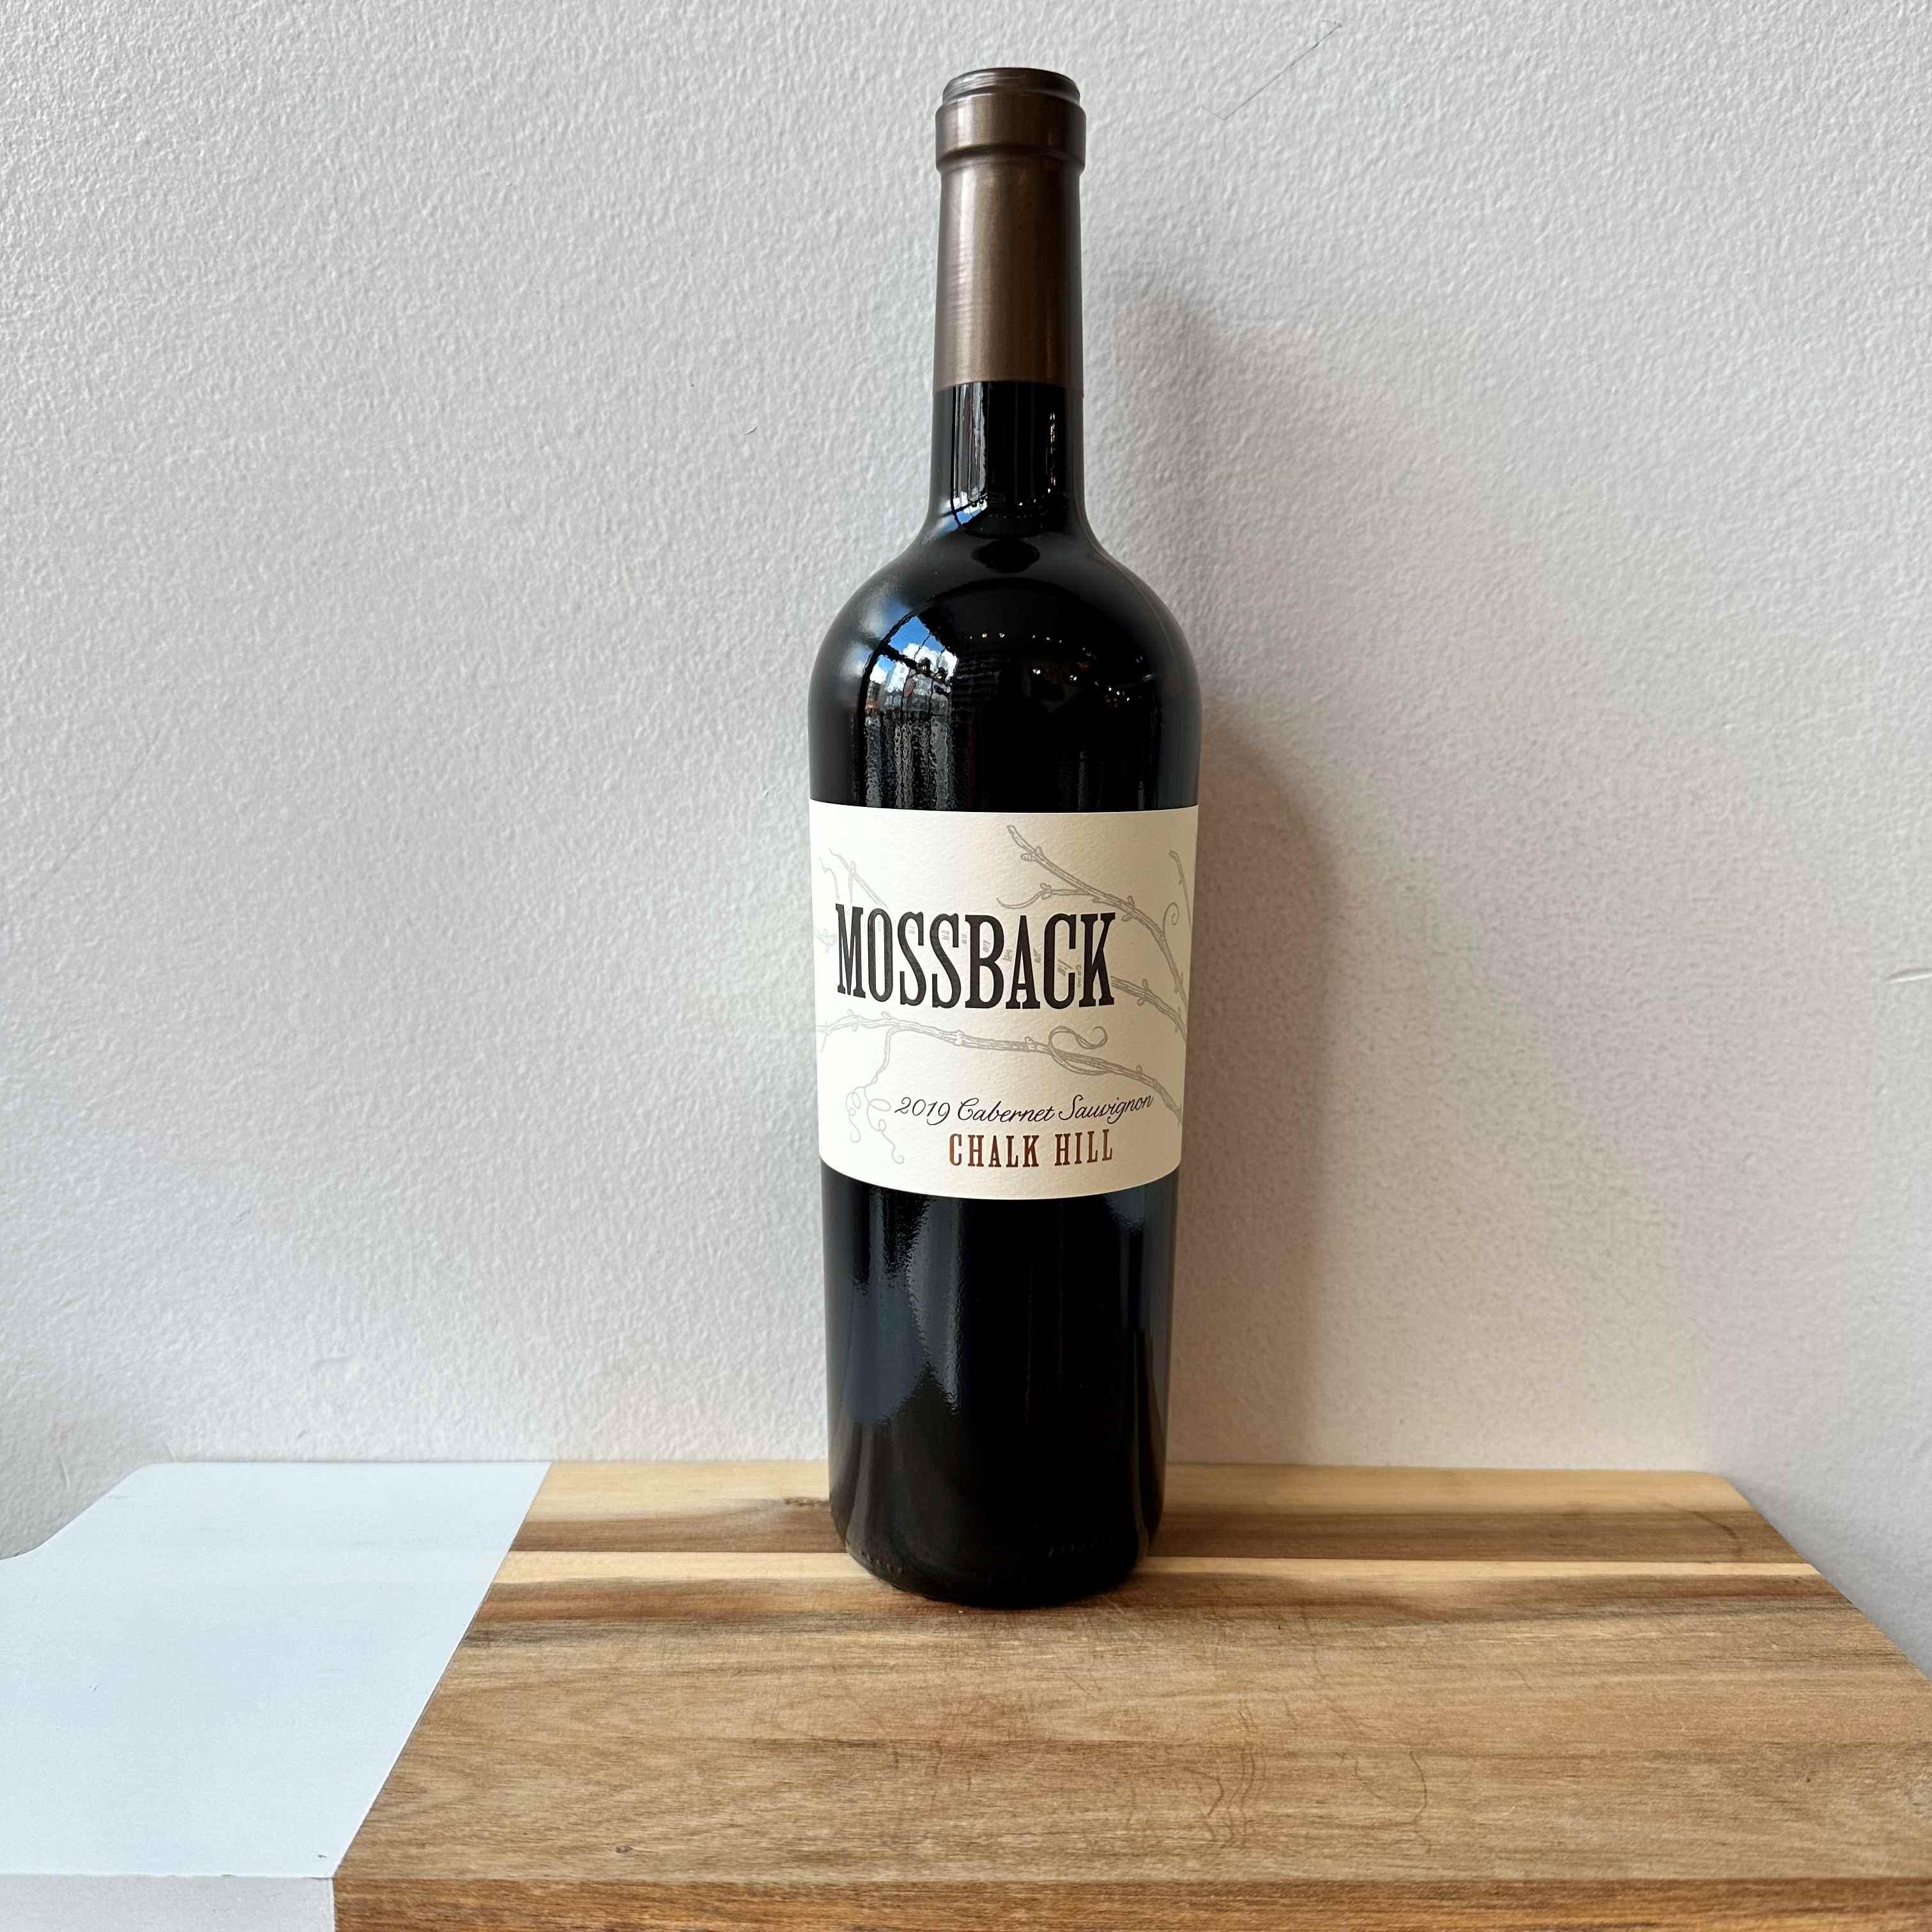 Matchbook Wine "Mossback" Cabernet Sauvignon 2019 Chalk Hill